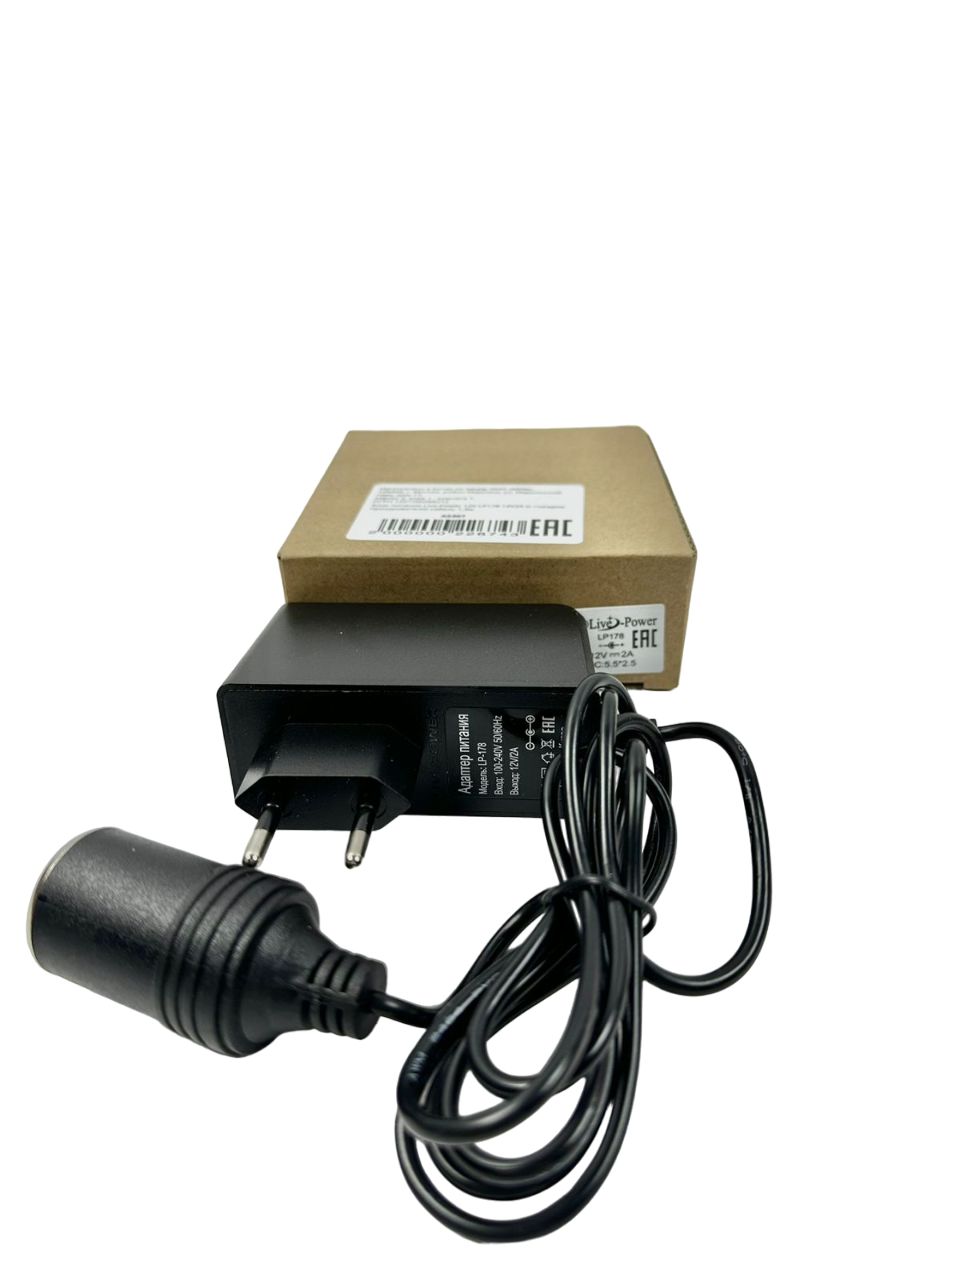 Блок питания Live-Power LP-178, 12 В/2 А, с гнездом прикуривателя, кабель 1.3 м панель бортового питания с разъемом прикуривателя 5 переключателей